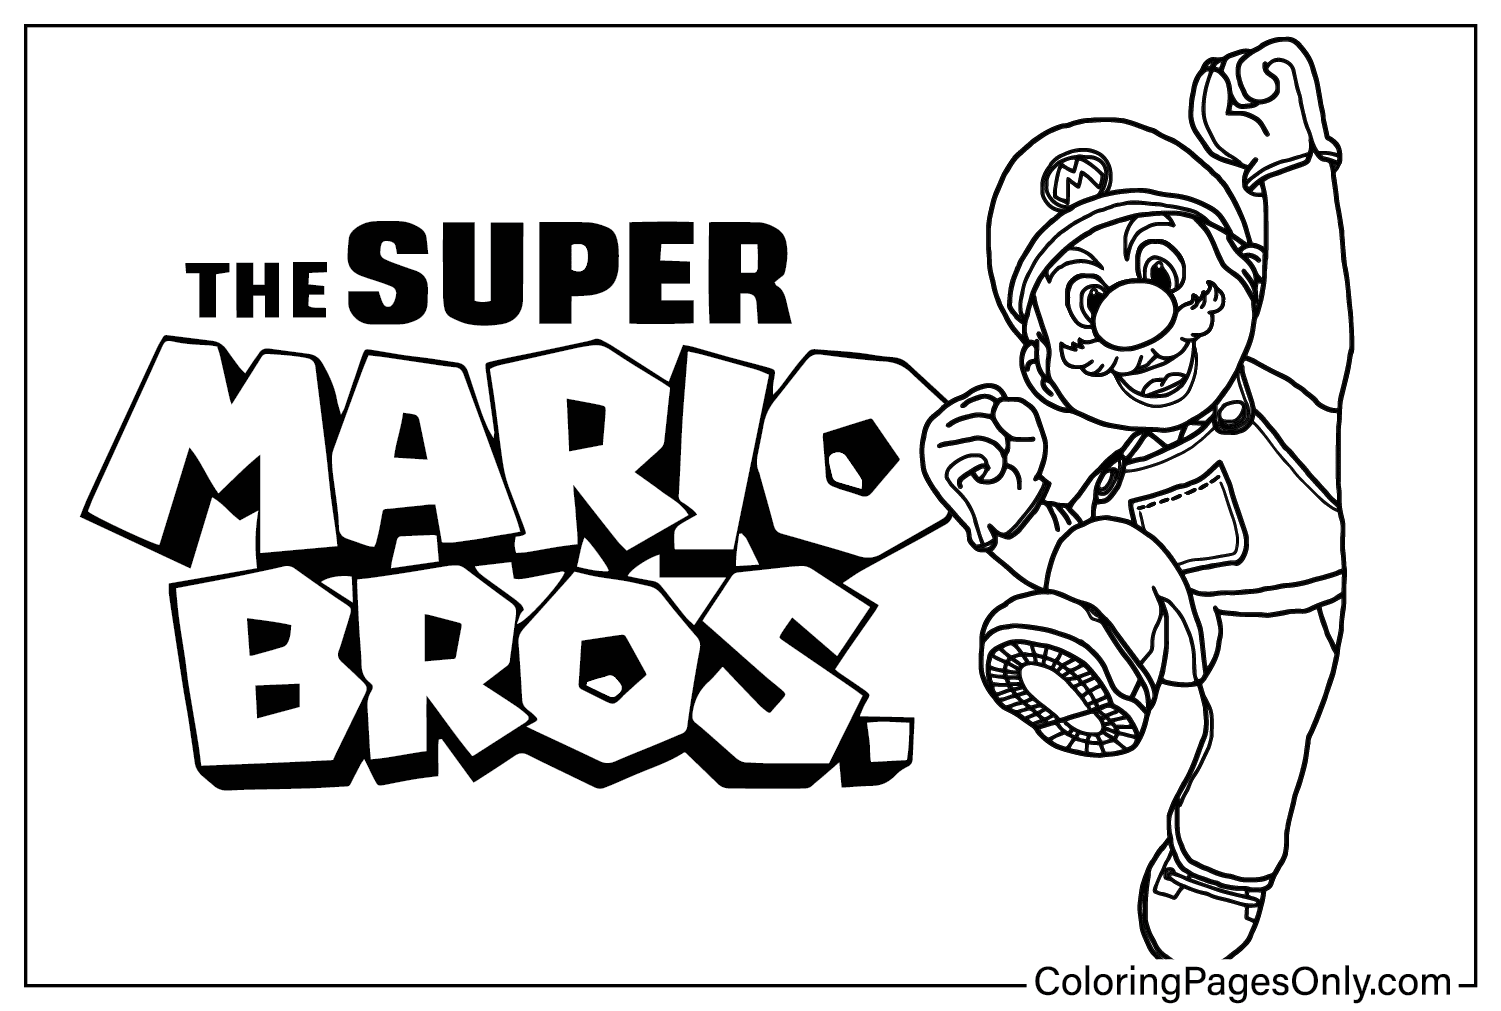 Цветная страница фильма Super Mario Bros. из фильма Super Mario Bros.